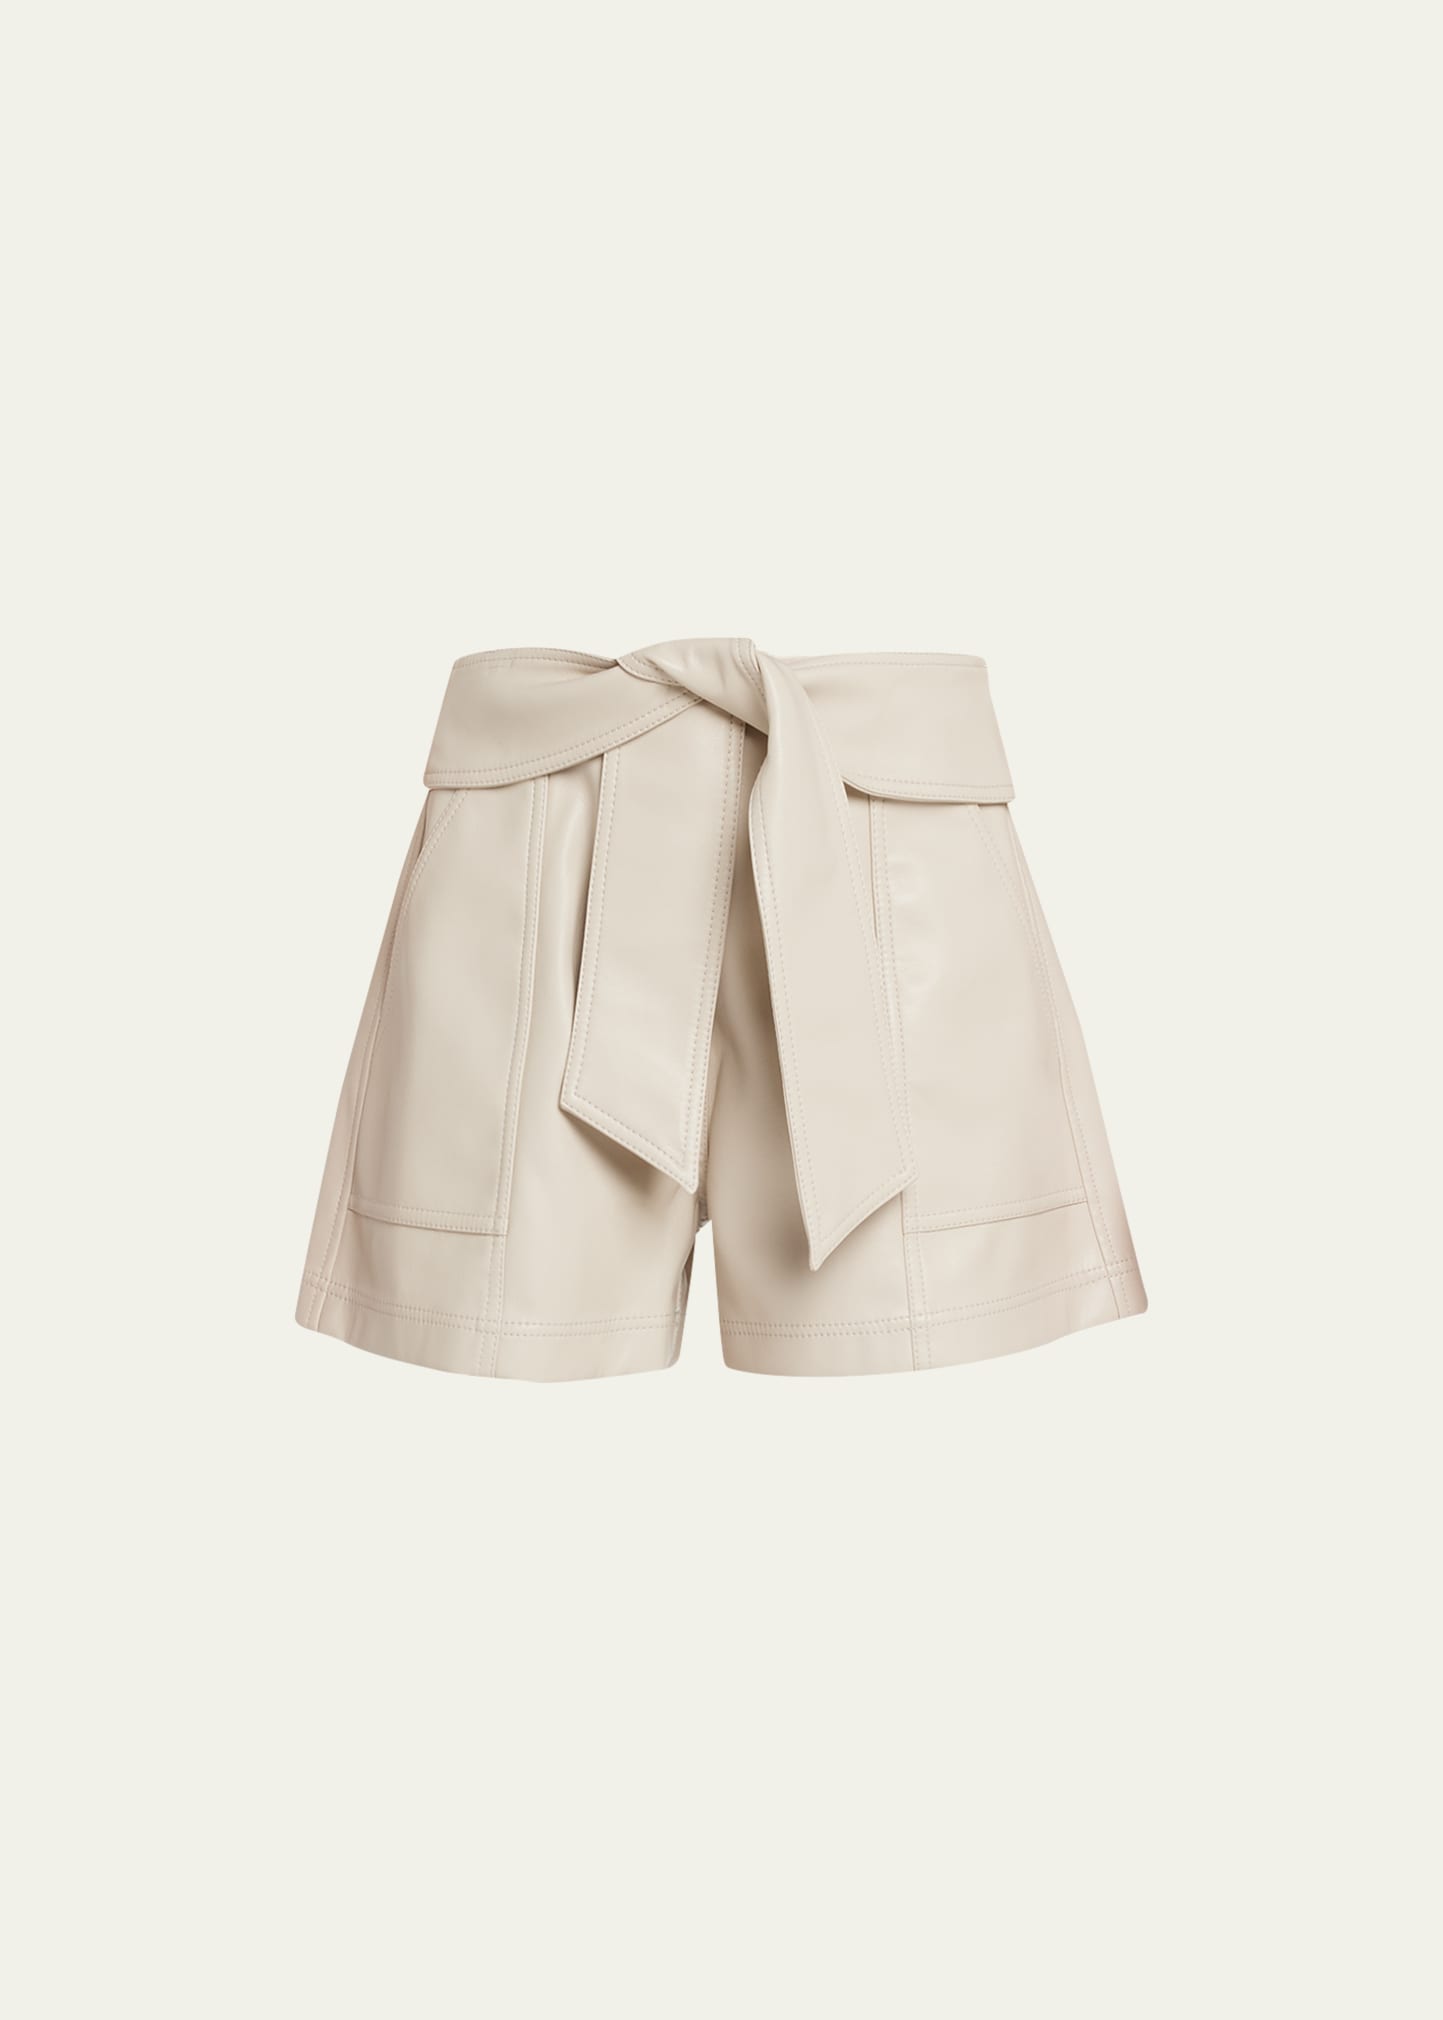 Simkhai Mari Vegan Leather Tie-waist Shorts In Egret